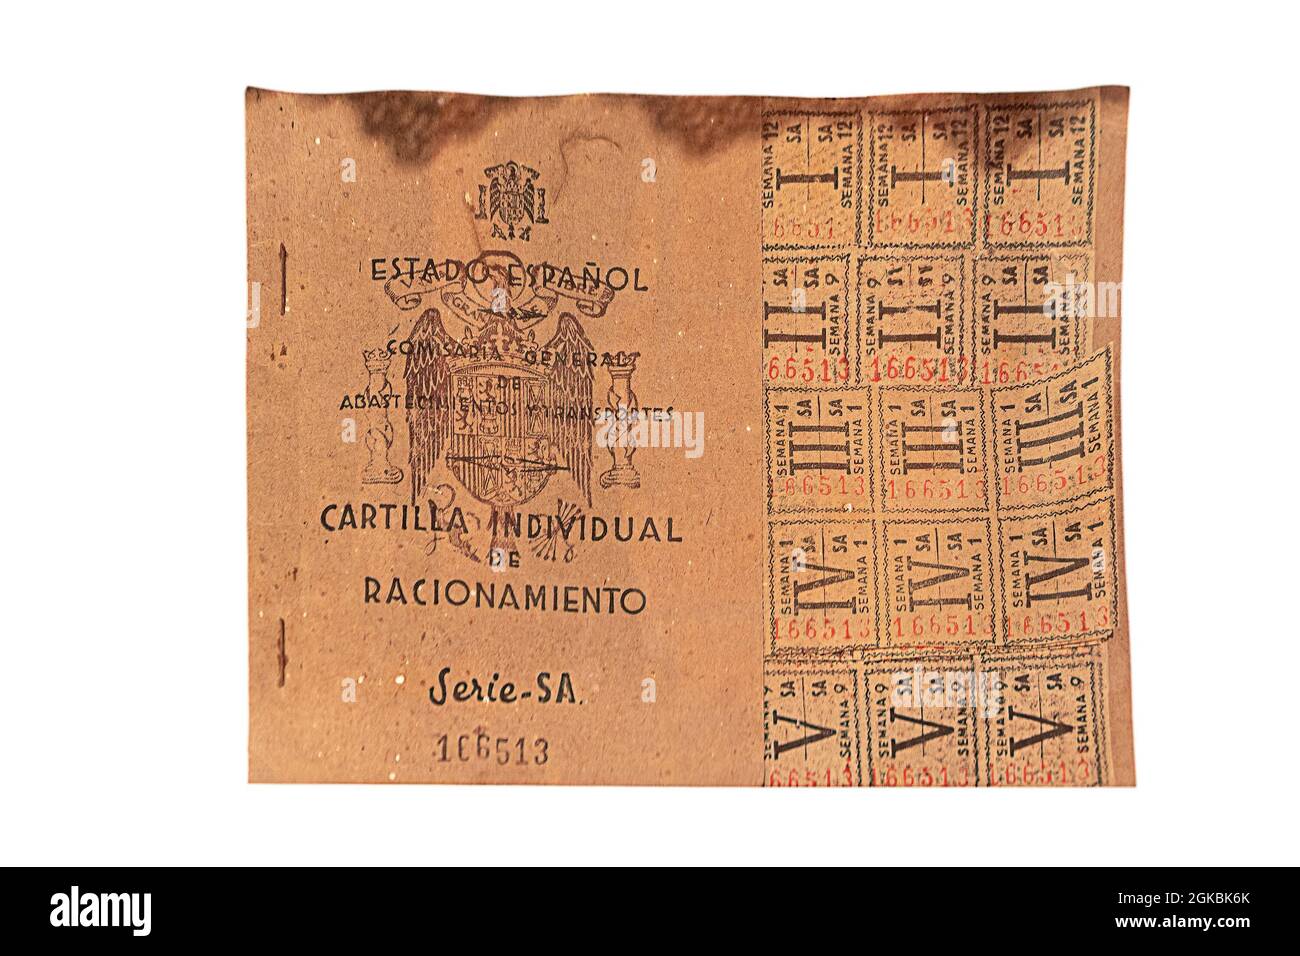 Salamanque, Espagne - 10 octobre 2017: Carte de rationnement espagnole avec coupons valables du 1939 au 1952 pendant la guerre civile espagnole.Photographie faite sur b blanc Banque D'Images